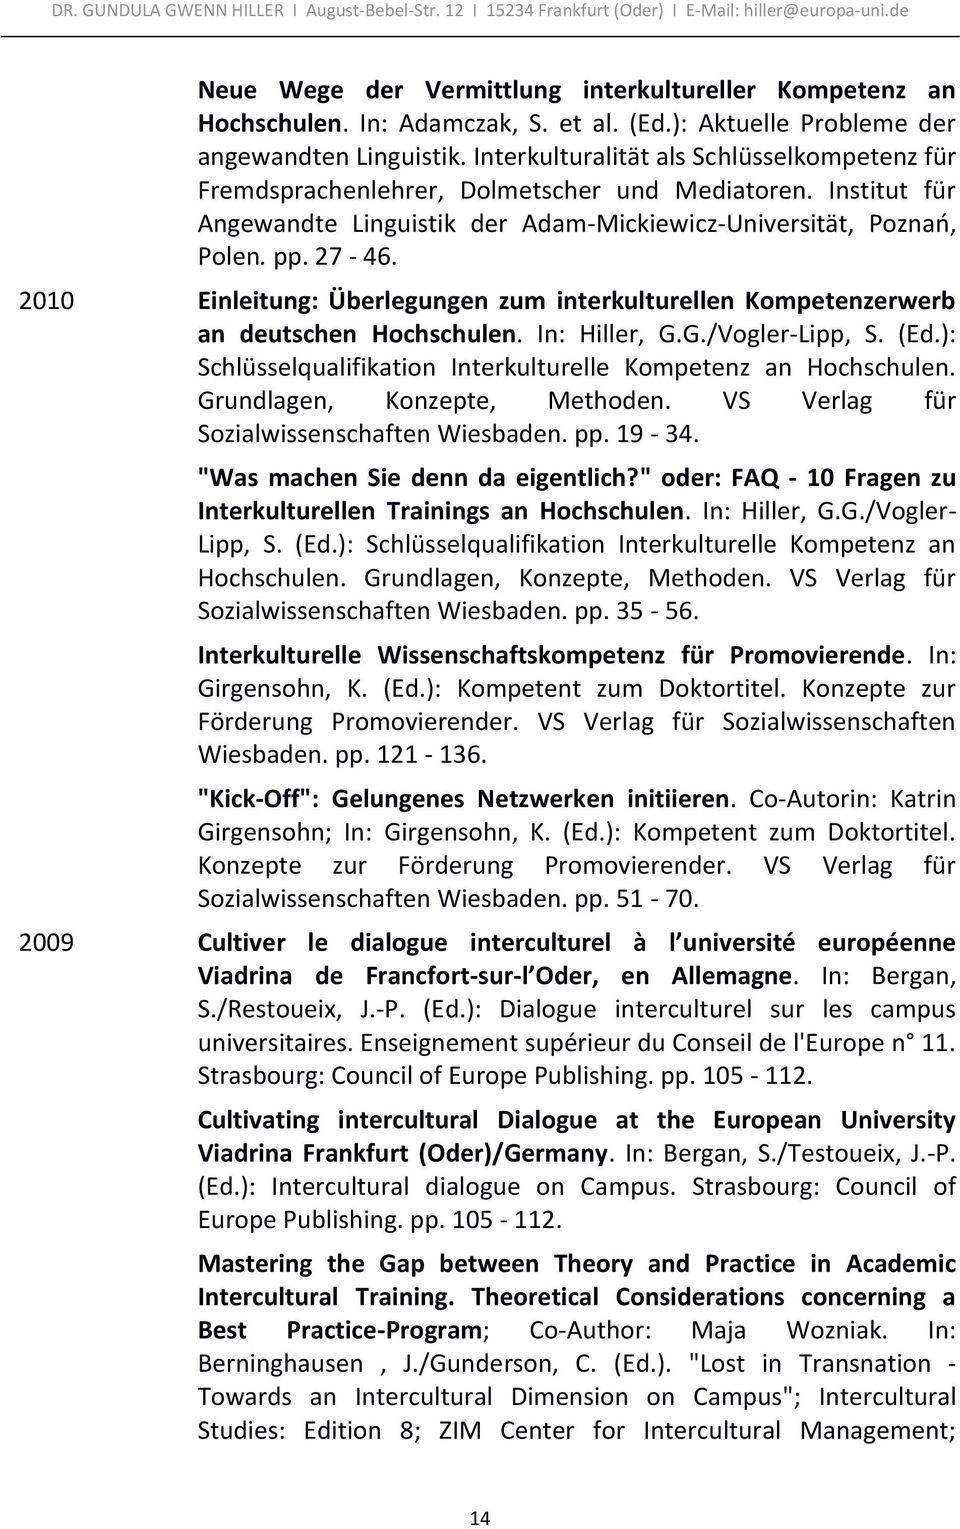 2010 Einleitung: Überlegungen zum interkulturellen Kompetenzerwerb an deutschen Hochschulen. In: Hiller, G.G./Vogler-Lipp, S. (Ed.): Schlüsselqualifikation Interkulturelle Kompetenz an Hochschulen.